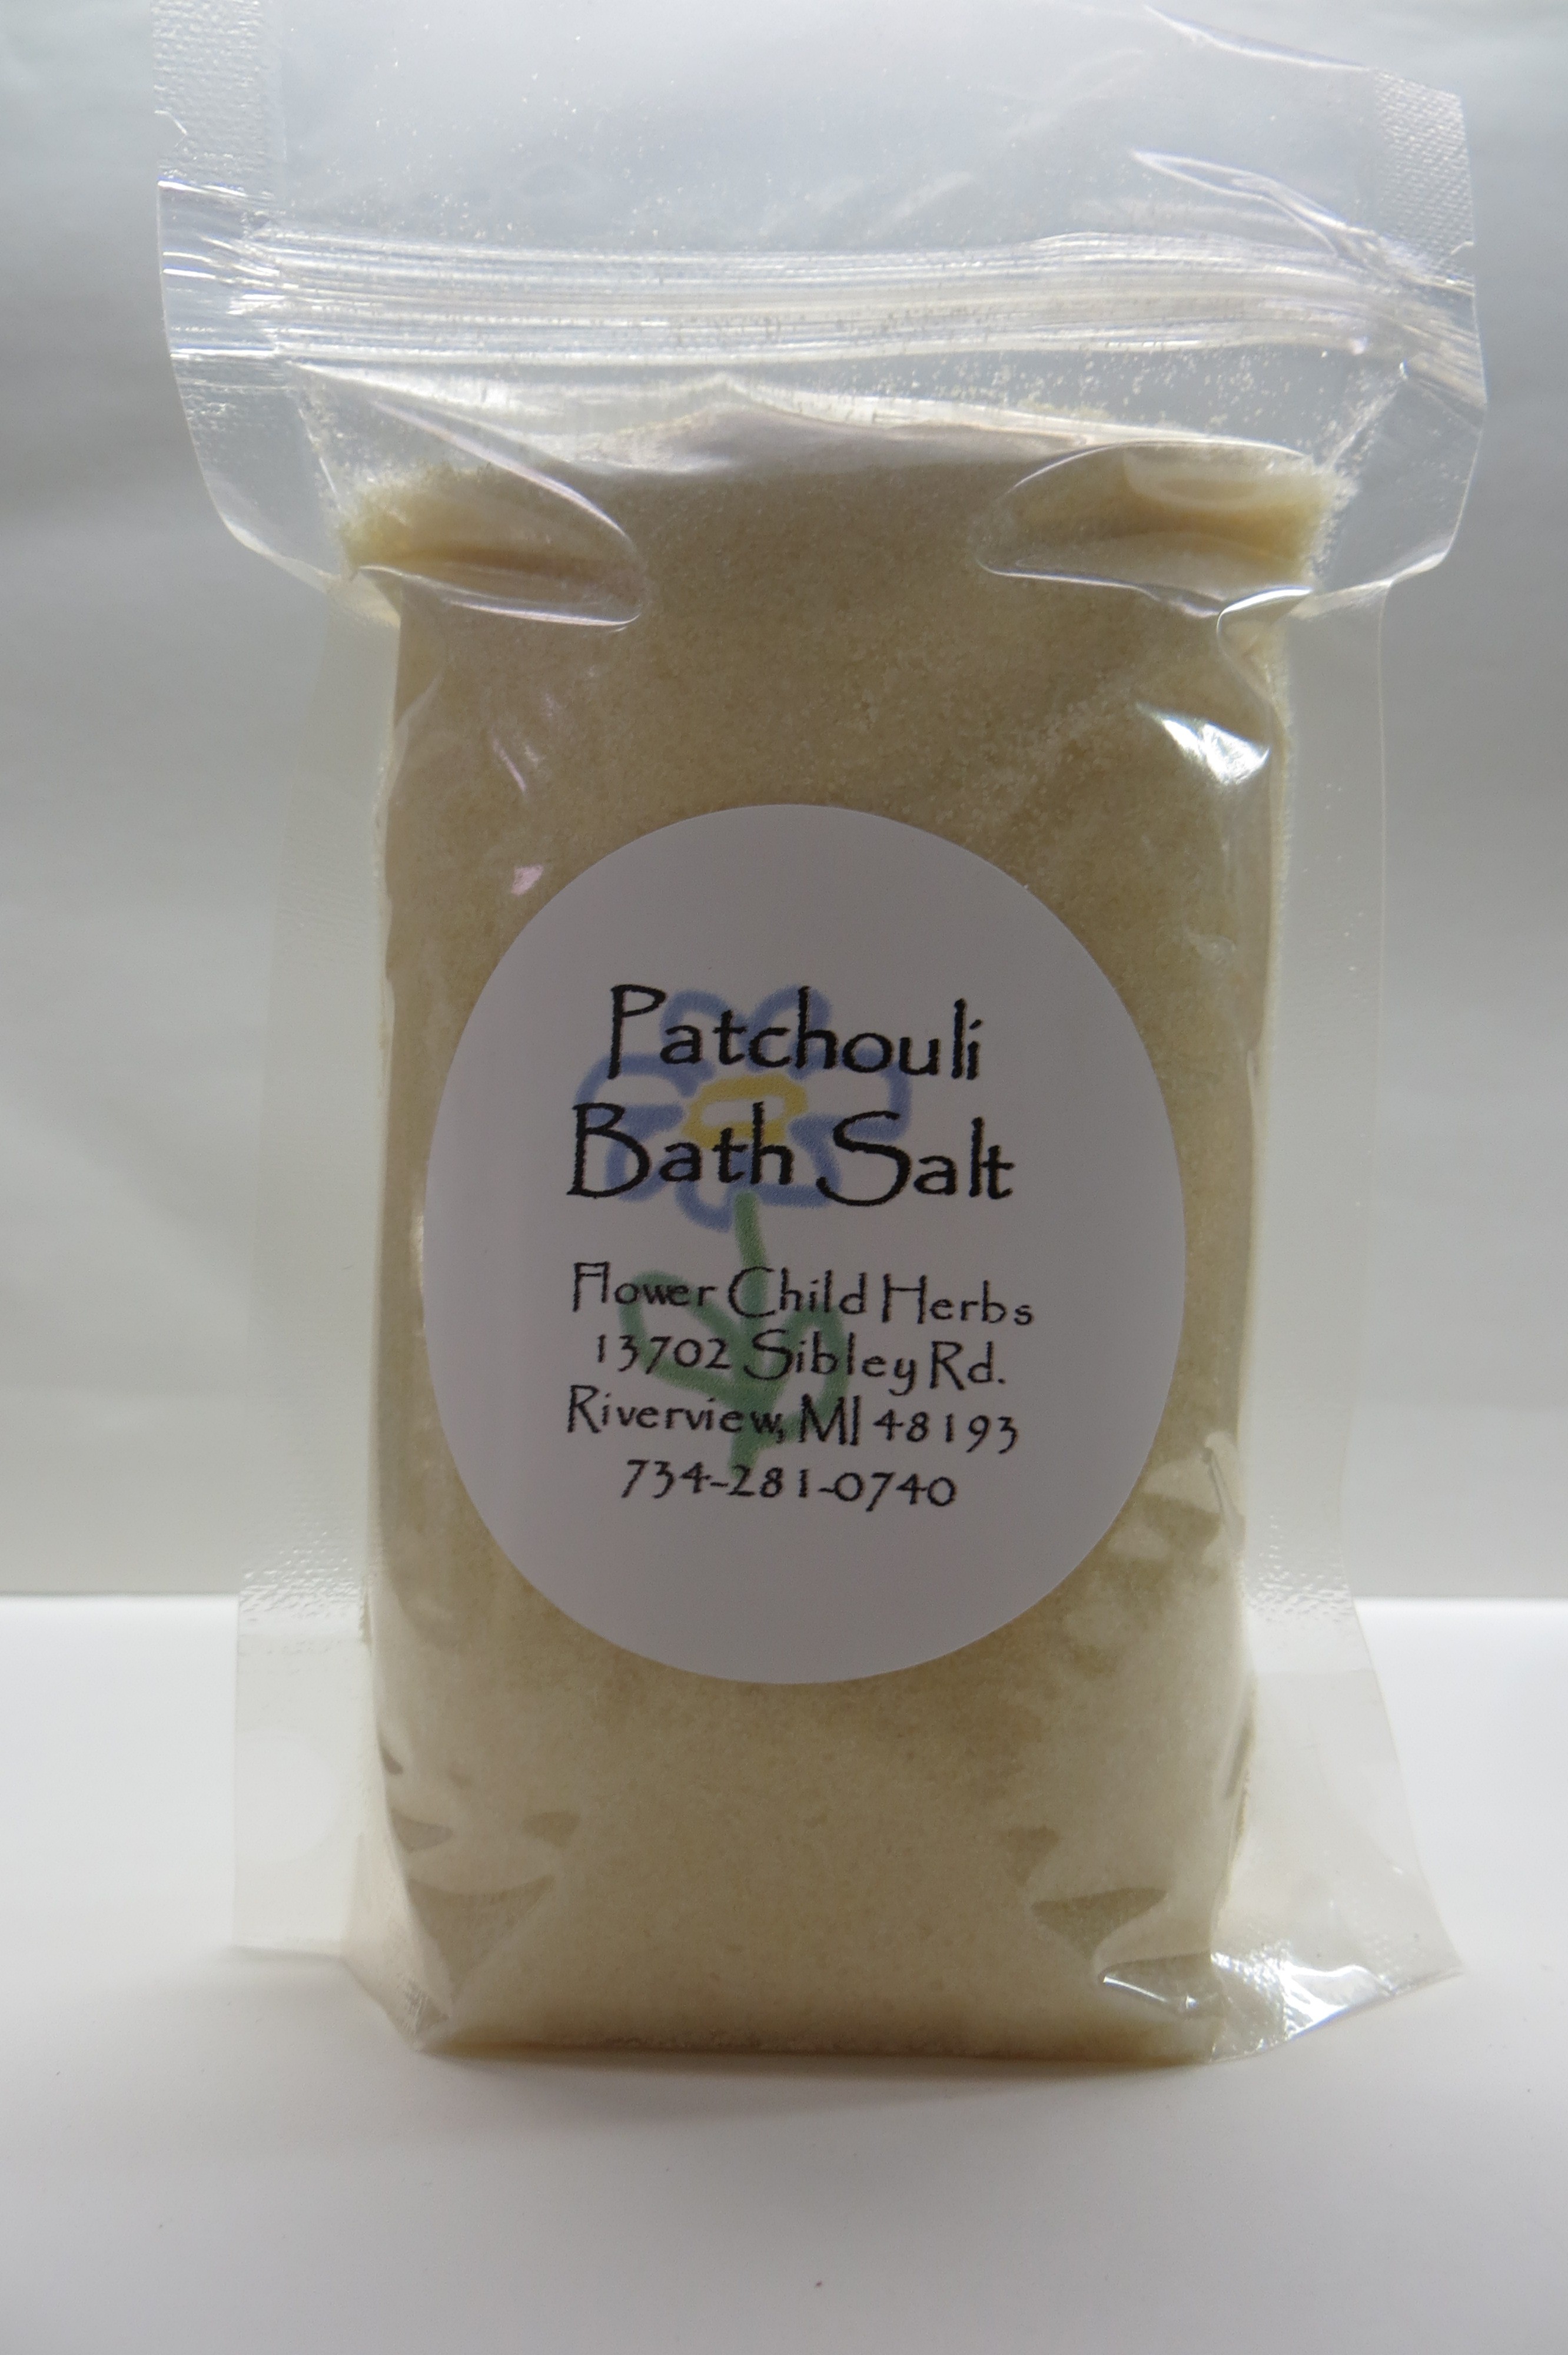 Patchouli Bath Salt